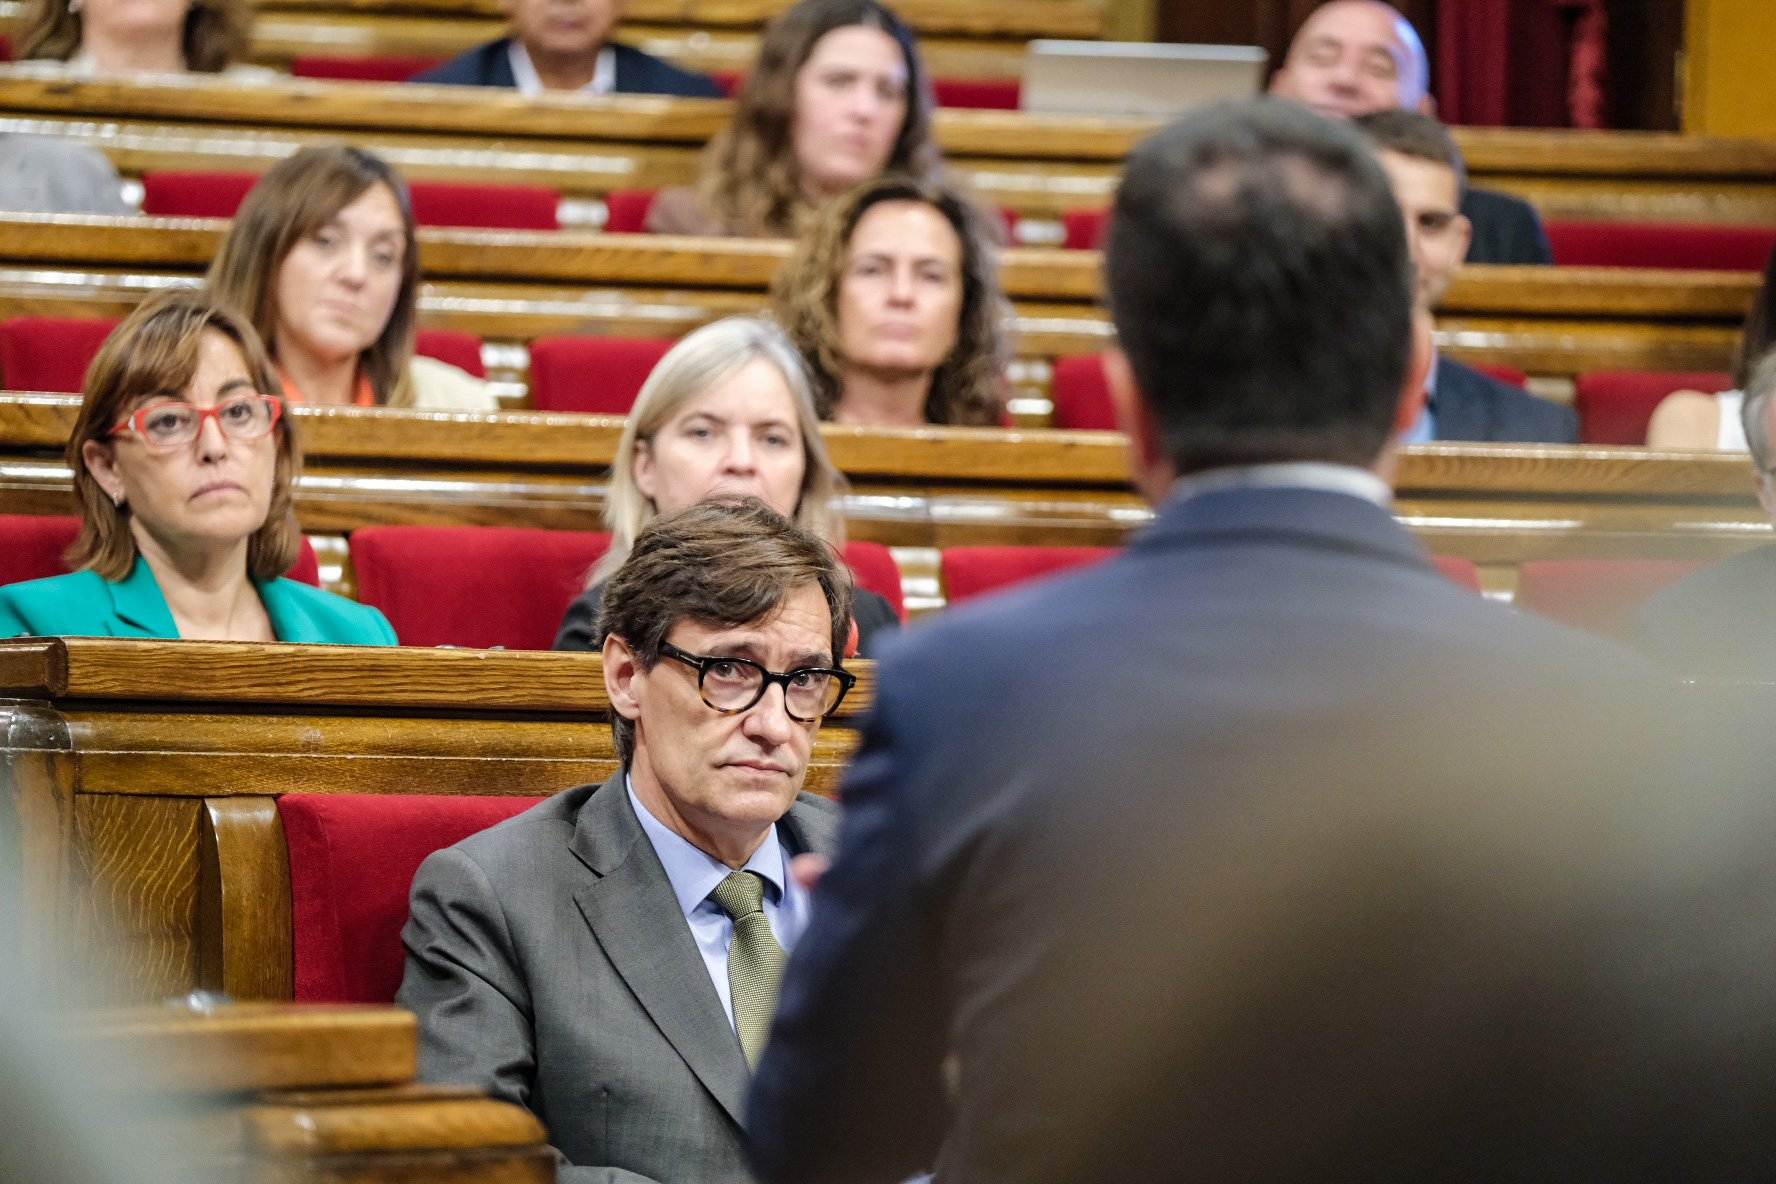 Aragonès garanteix més contundència davant la violència i el crim organitzat a Catalunya